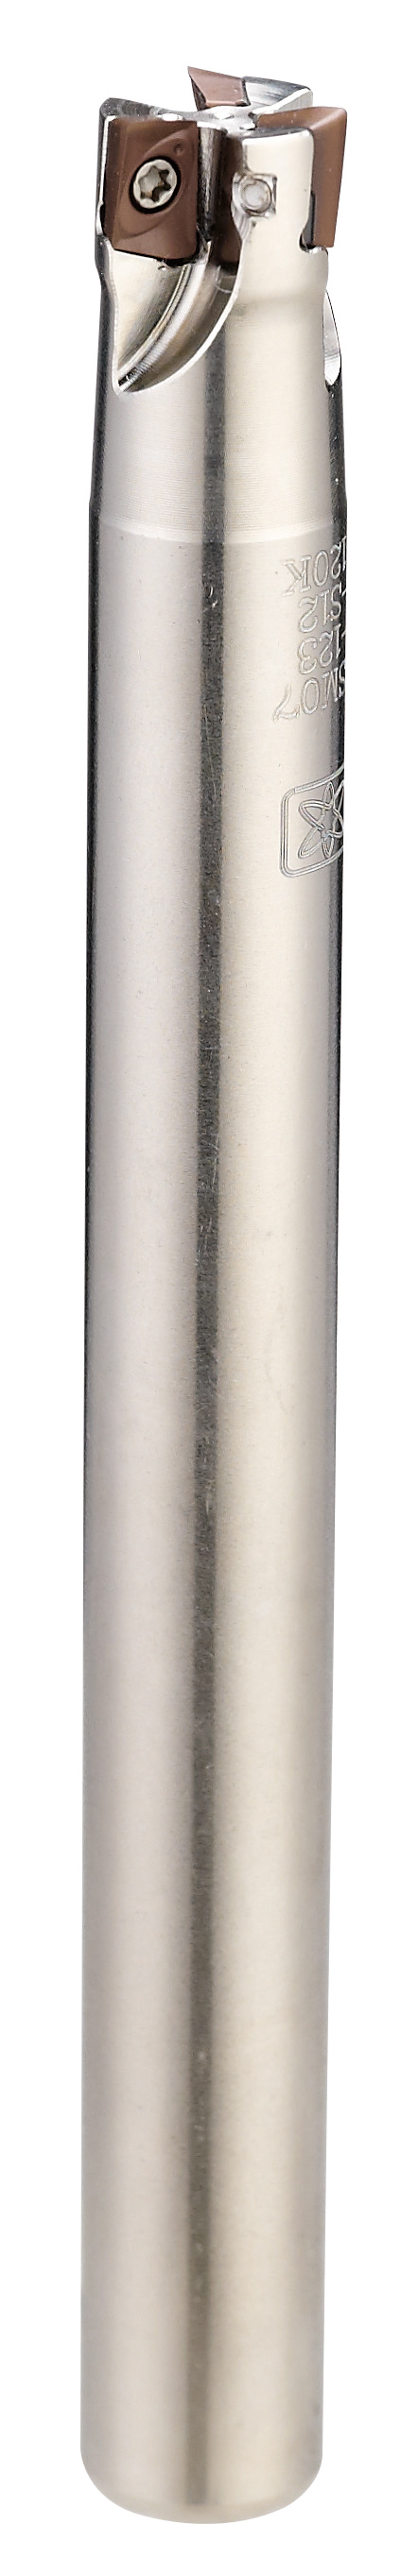 Products|ASM07 (JDMT0702) Shoulder Milling - shank